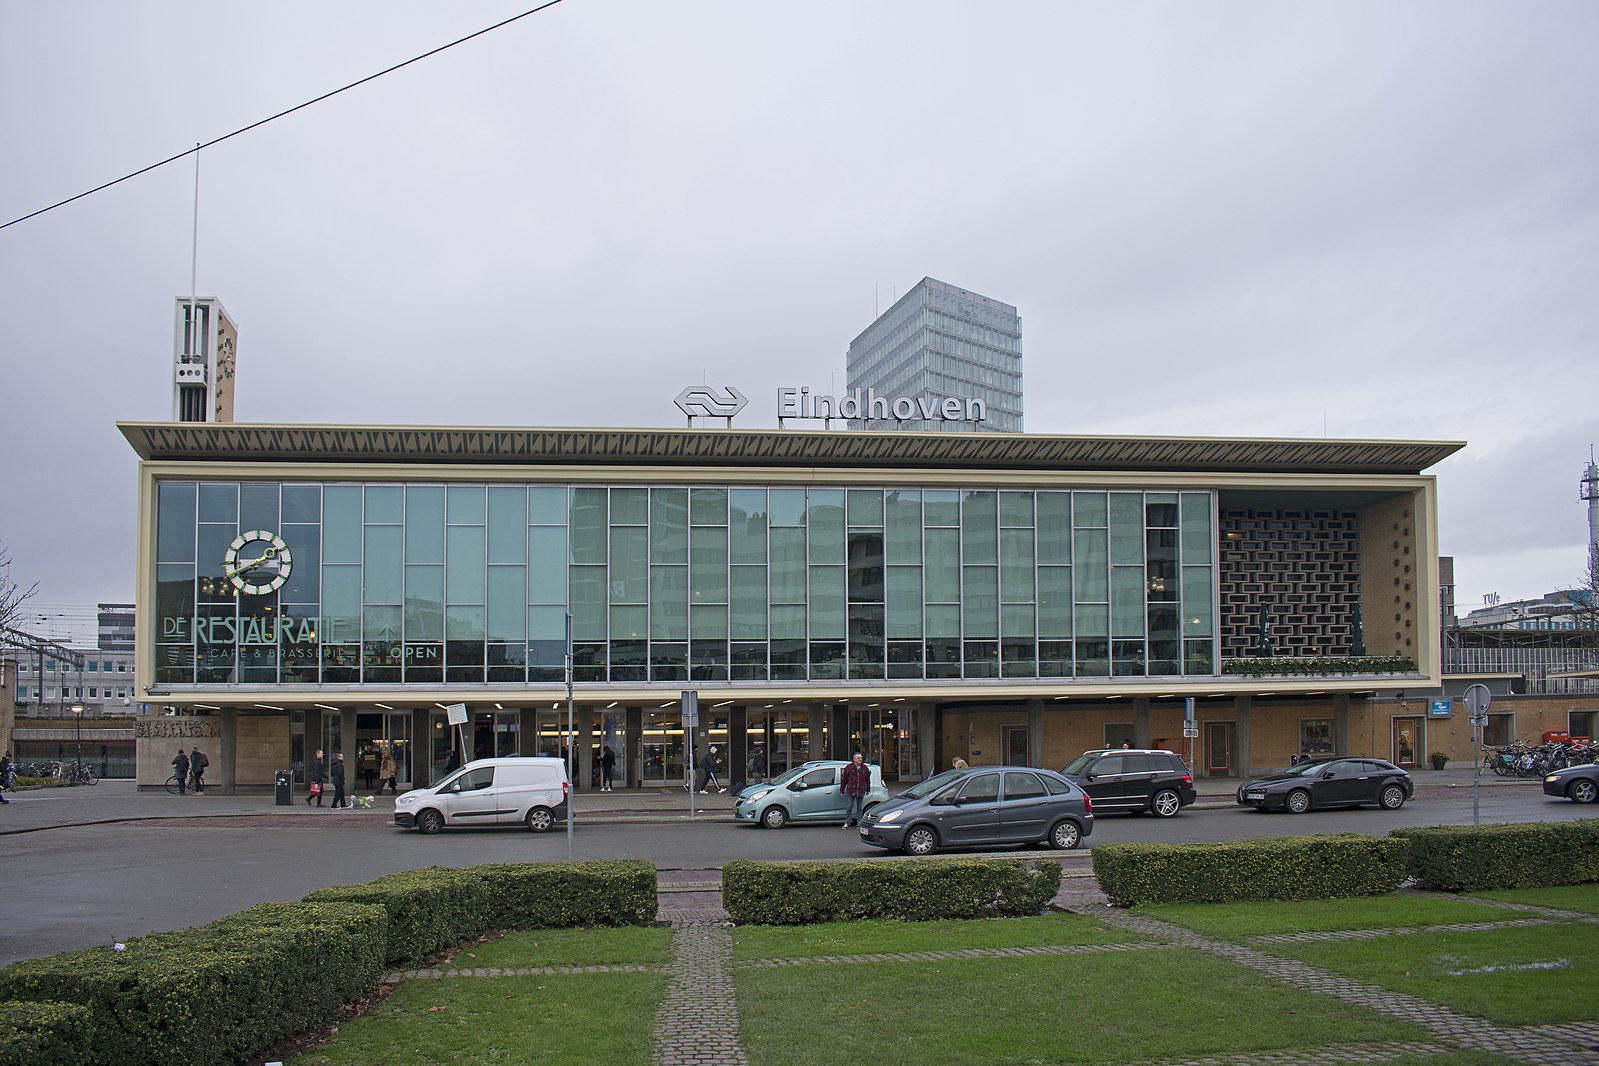 Eindhoven zinspeelt op mogelijke tramlijn